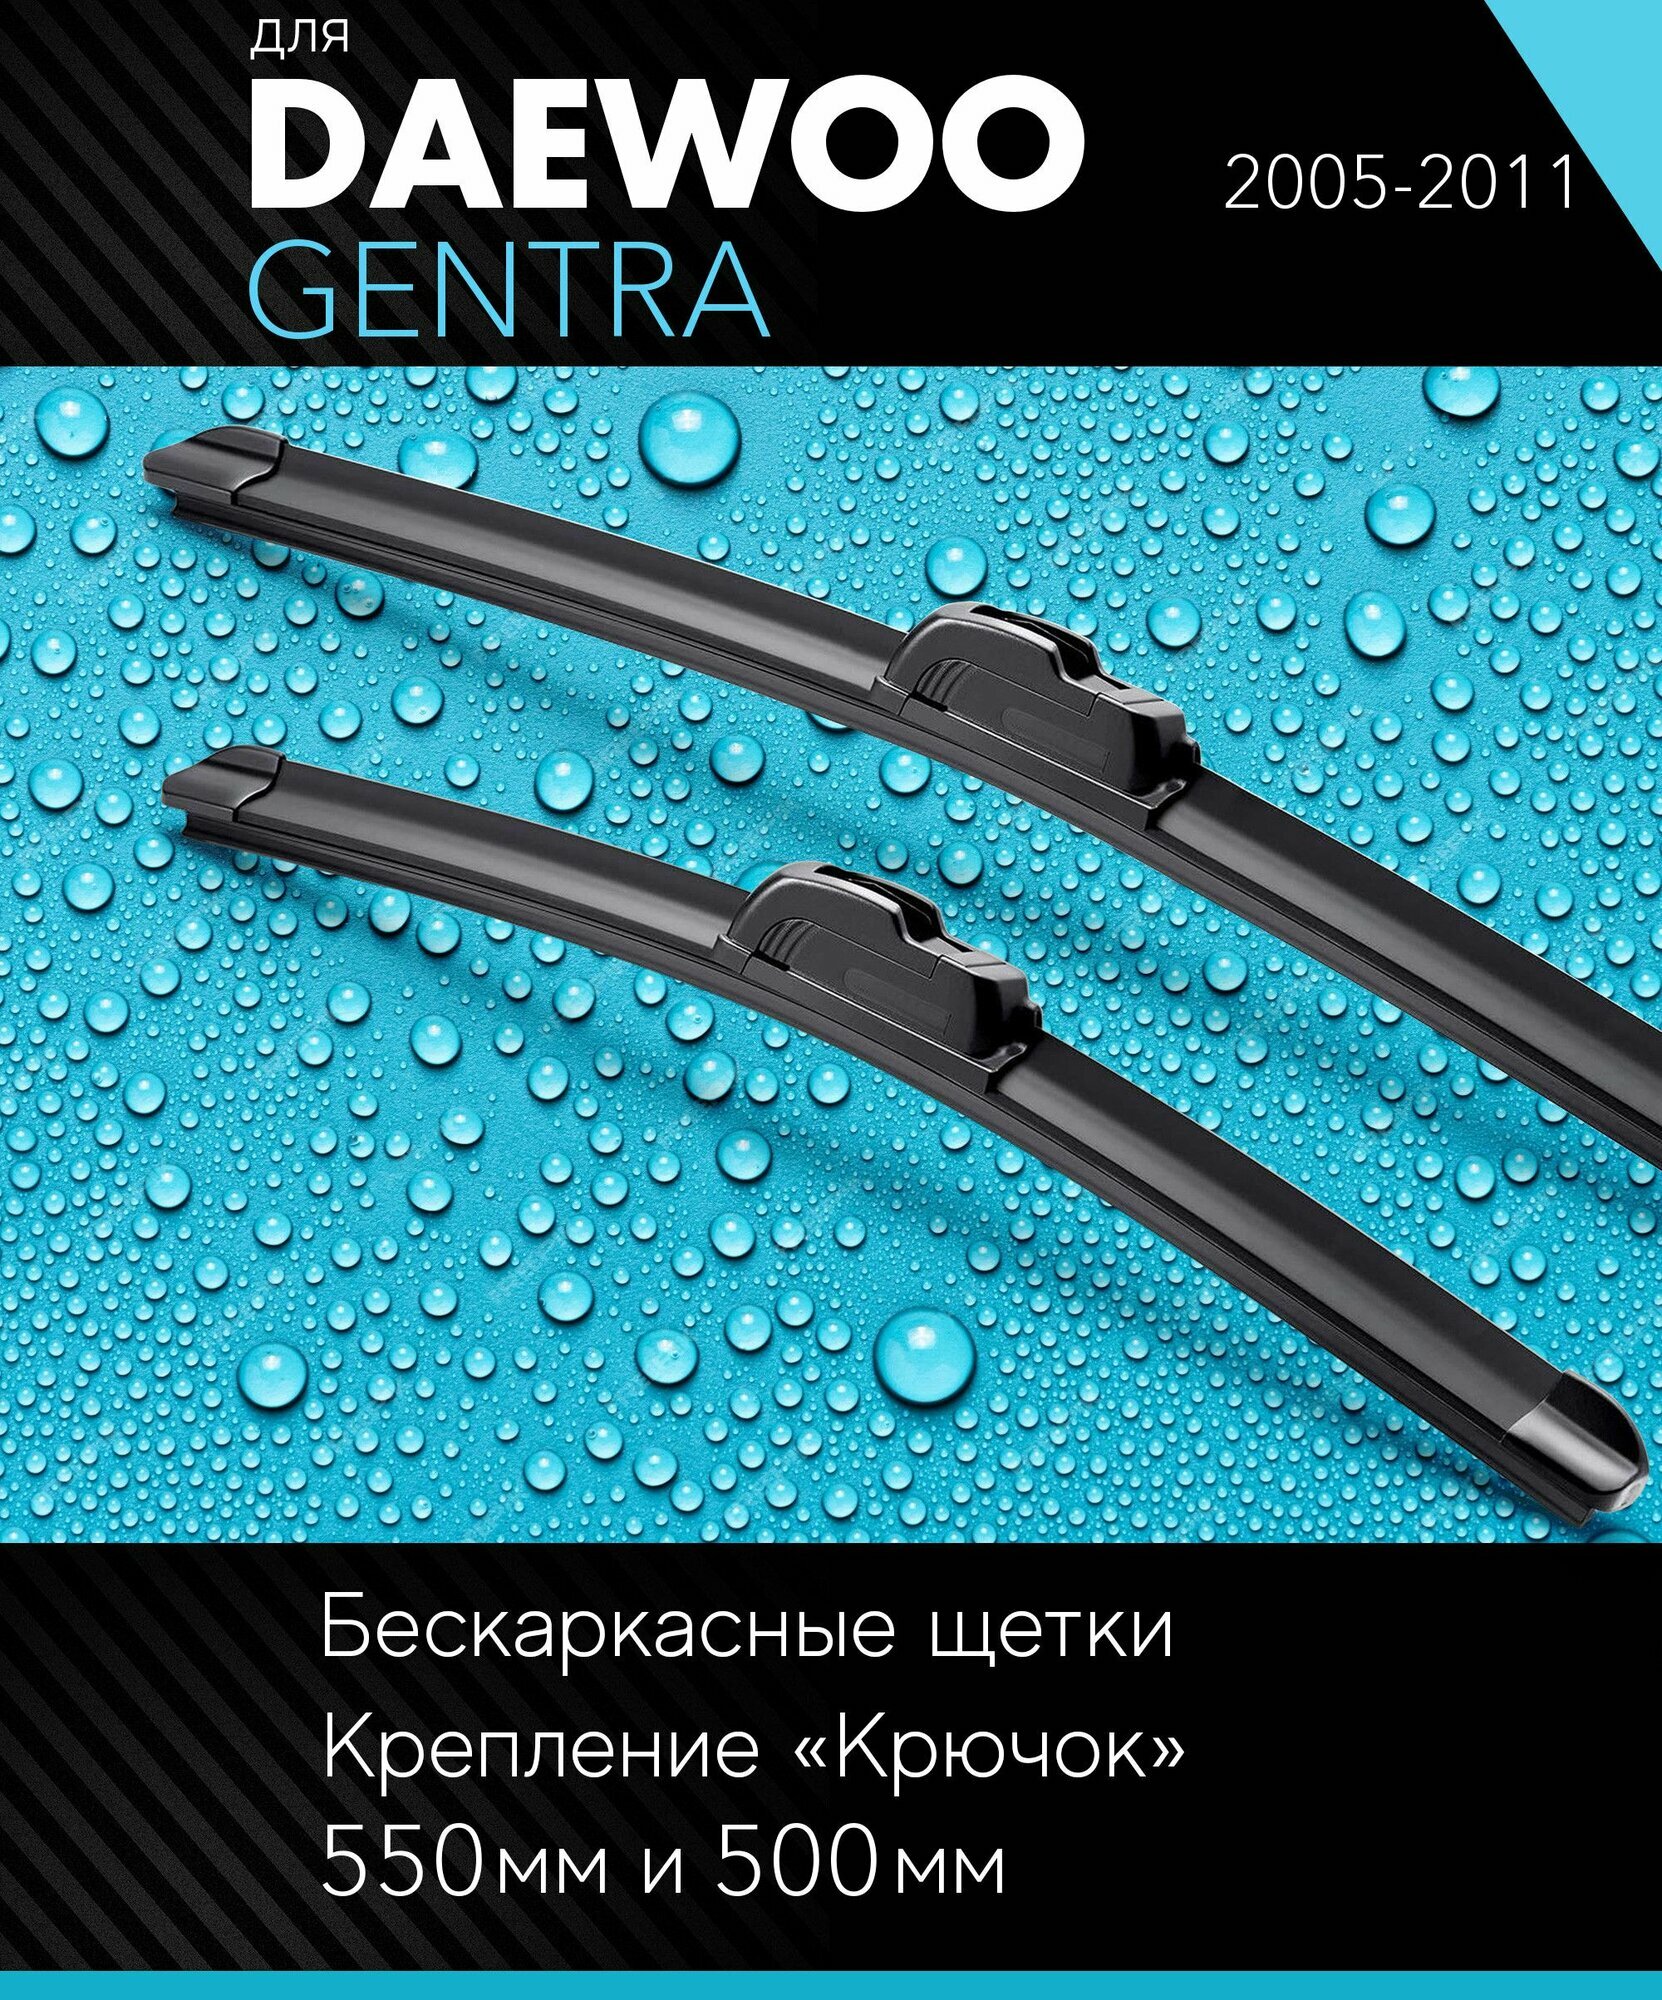 2 щетки стеклоочистителя 550 480 мм на Дэу Гентра 2005-2011 бескаркасные дворники комплект для Daewoo Gentra - Autoled